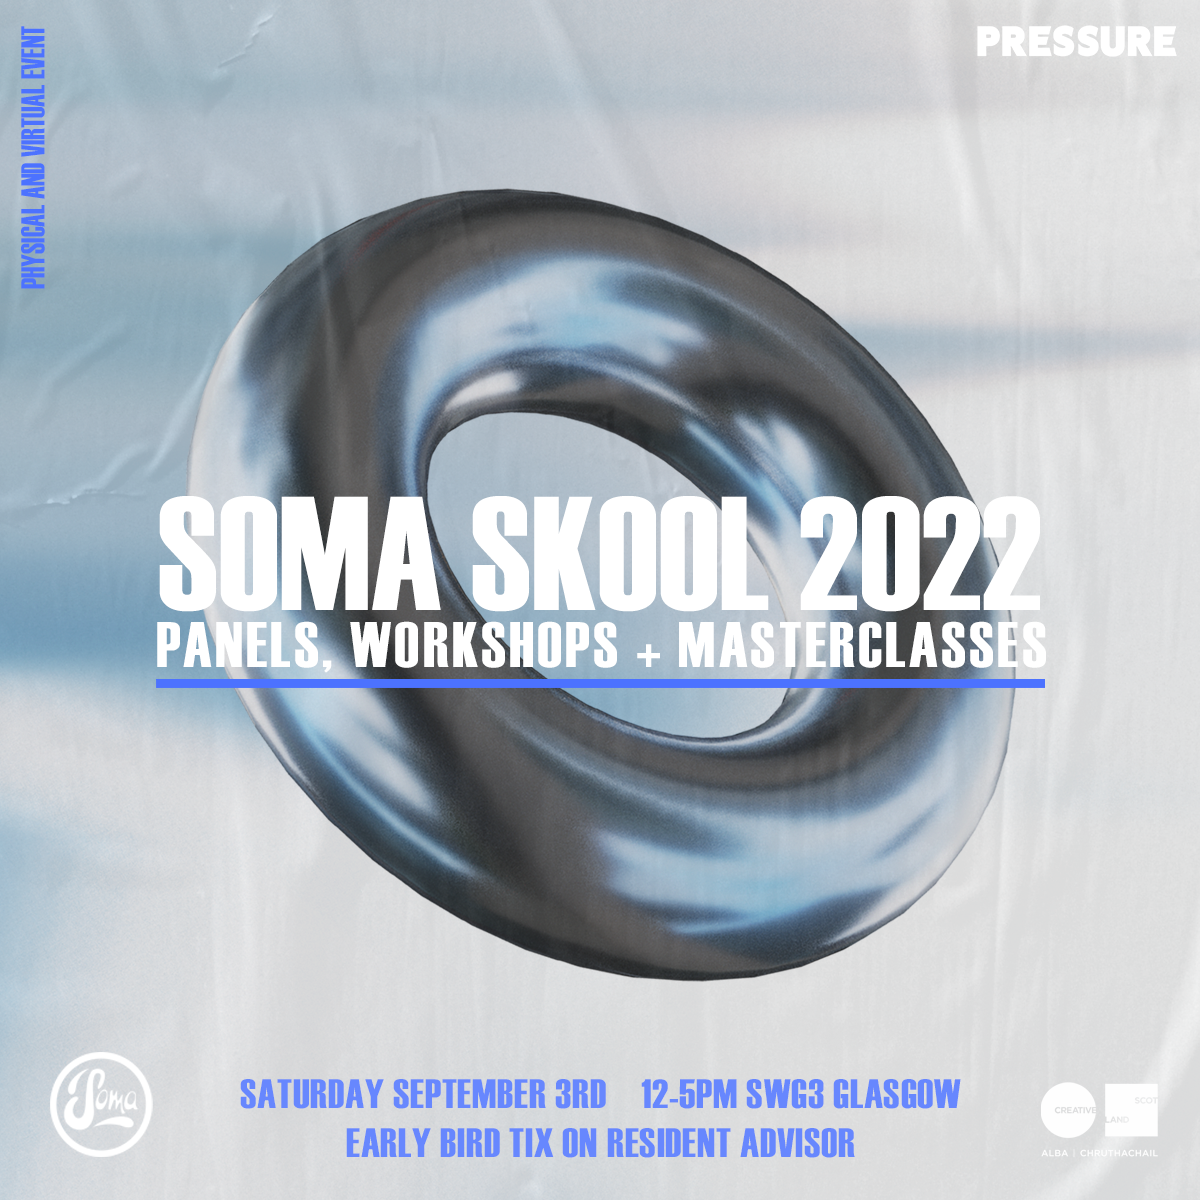 Soma Skool 2022 - フライヤー表